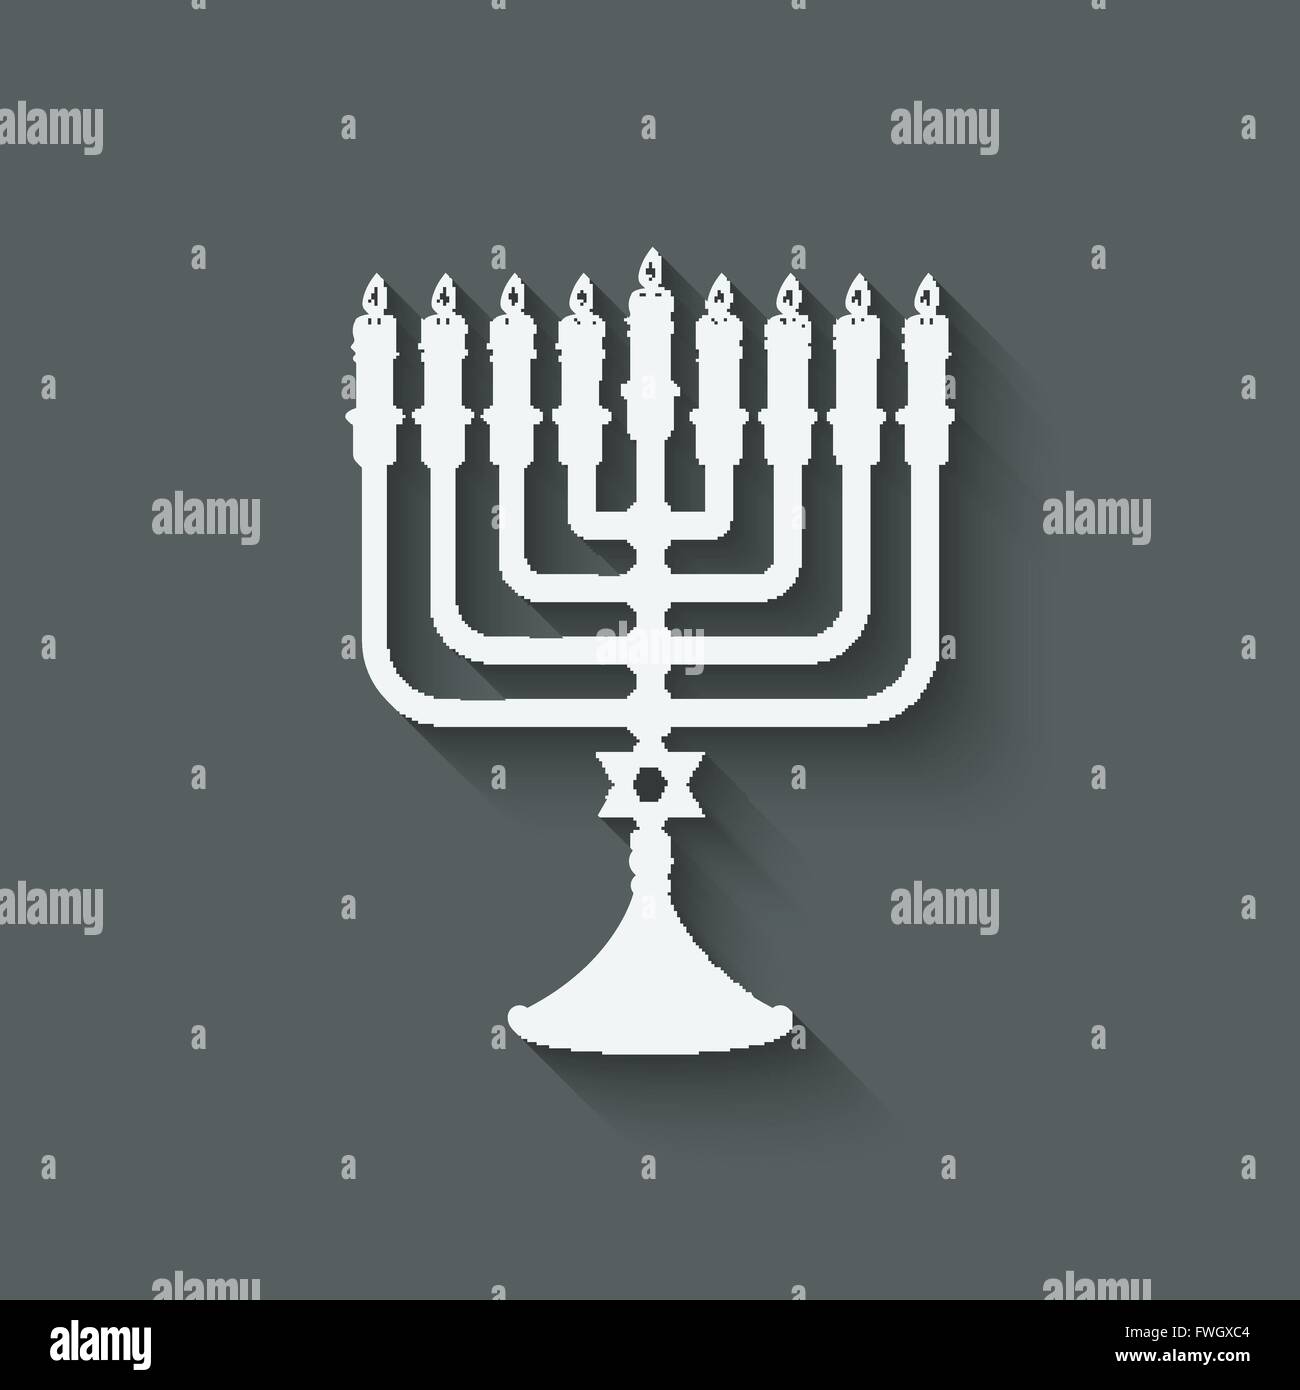 Hanukkah menorah symbol - vector illustration. eps 10 Stock Vector